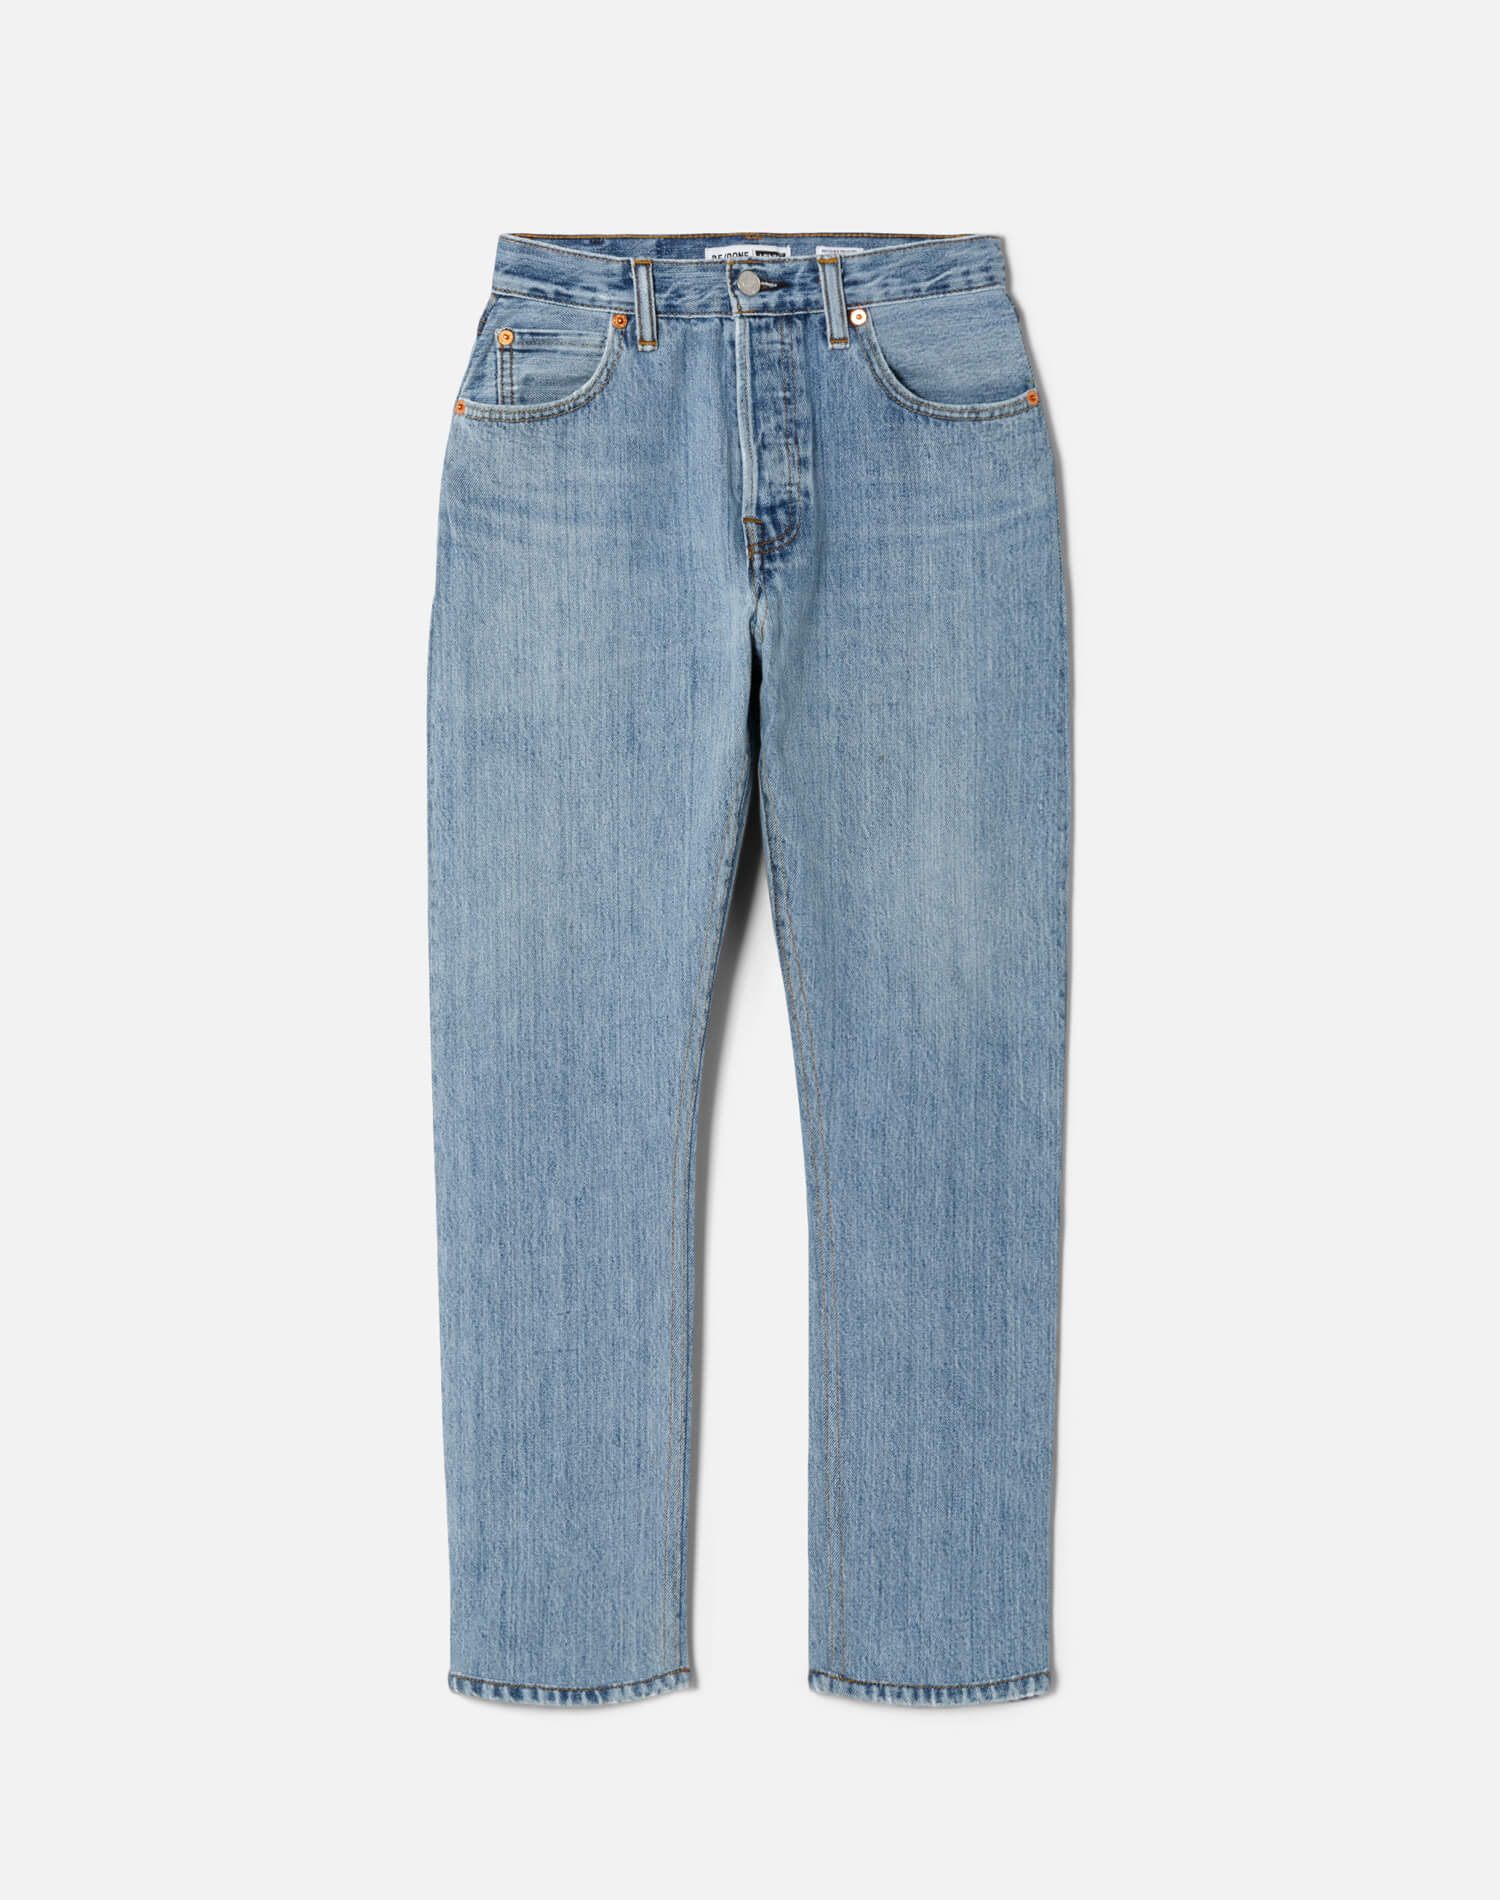 Threadz NZ, Cropped Stretch Jeans